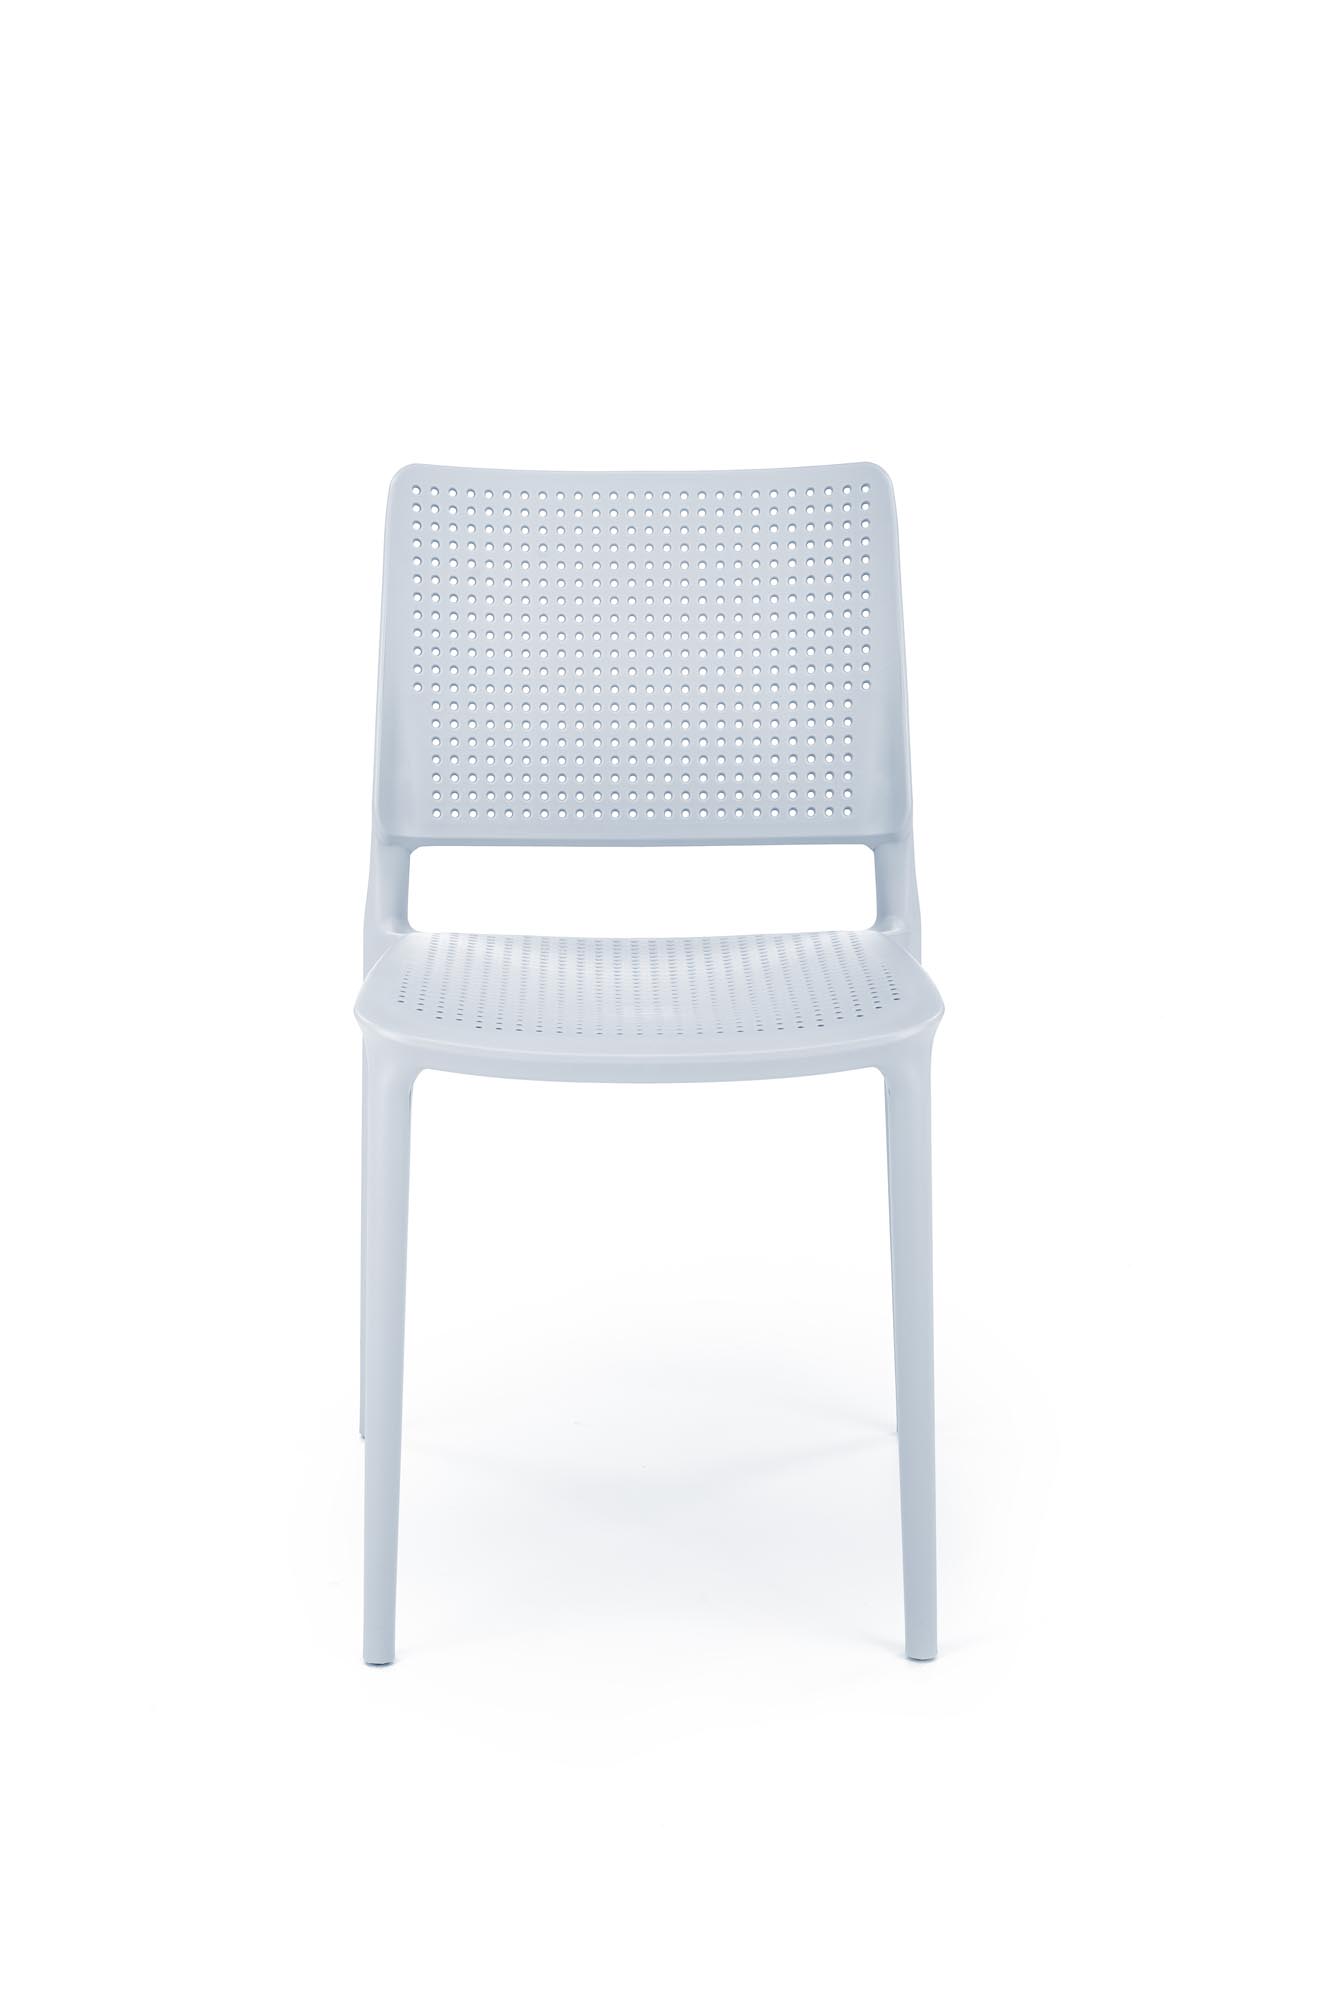 Scaun plastic K514 - albastru deschis Židle z tworzywa k514 - jasný Modrý